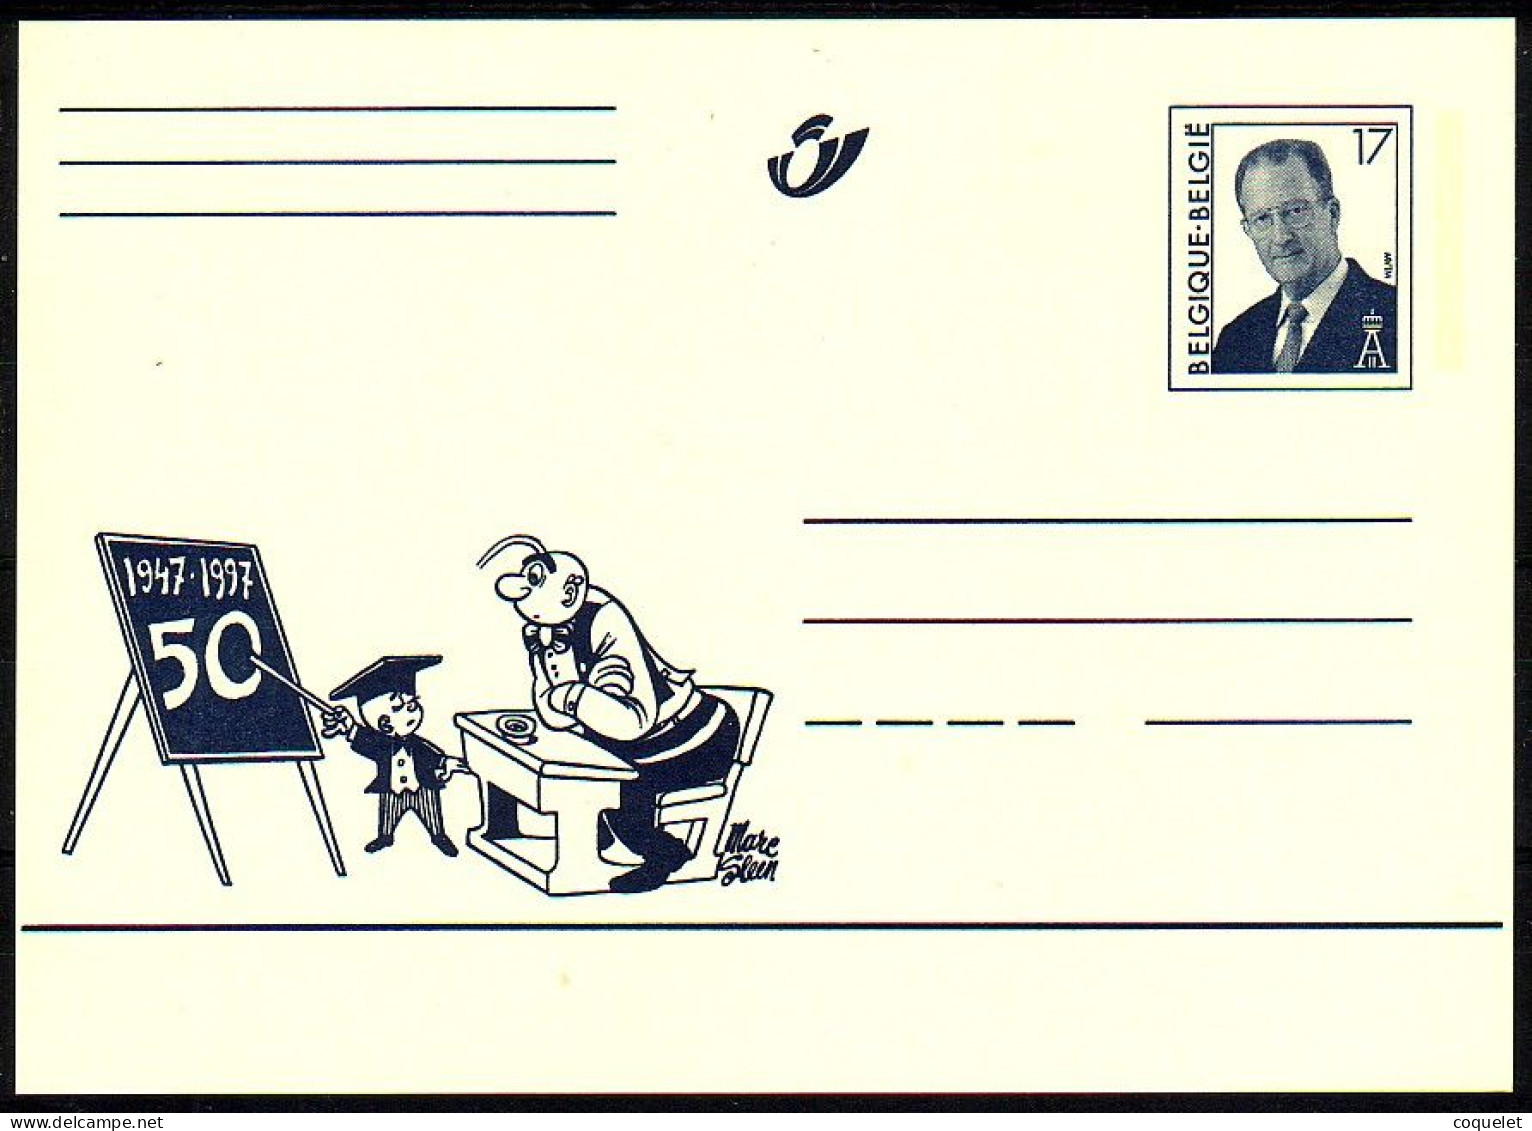 Belgique - Entiers Postaux - Cartes Illustrées N° 64 # NERON à L'école # Son Cinquantenaire 1947-1997 - Fumetti